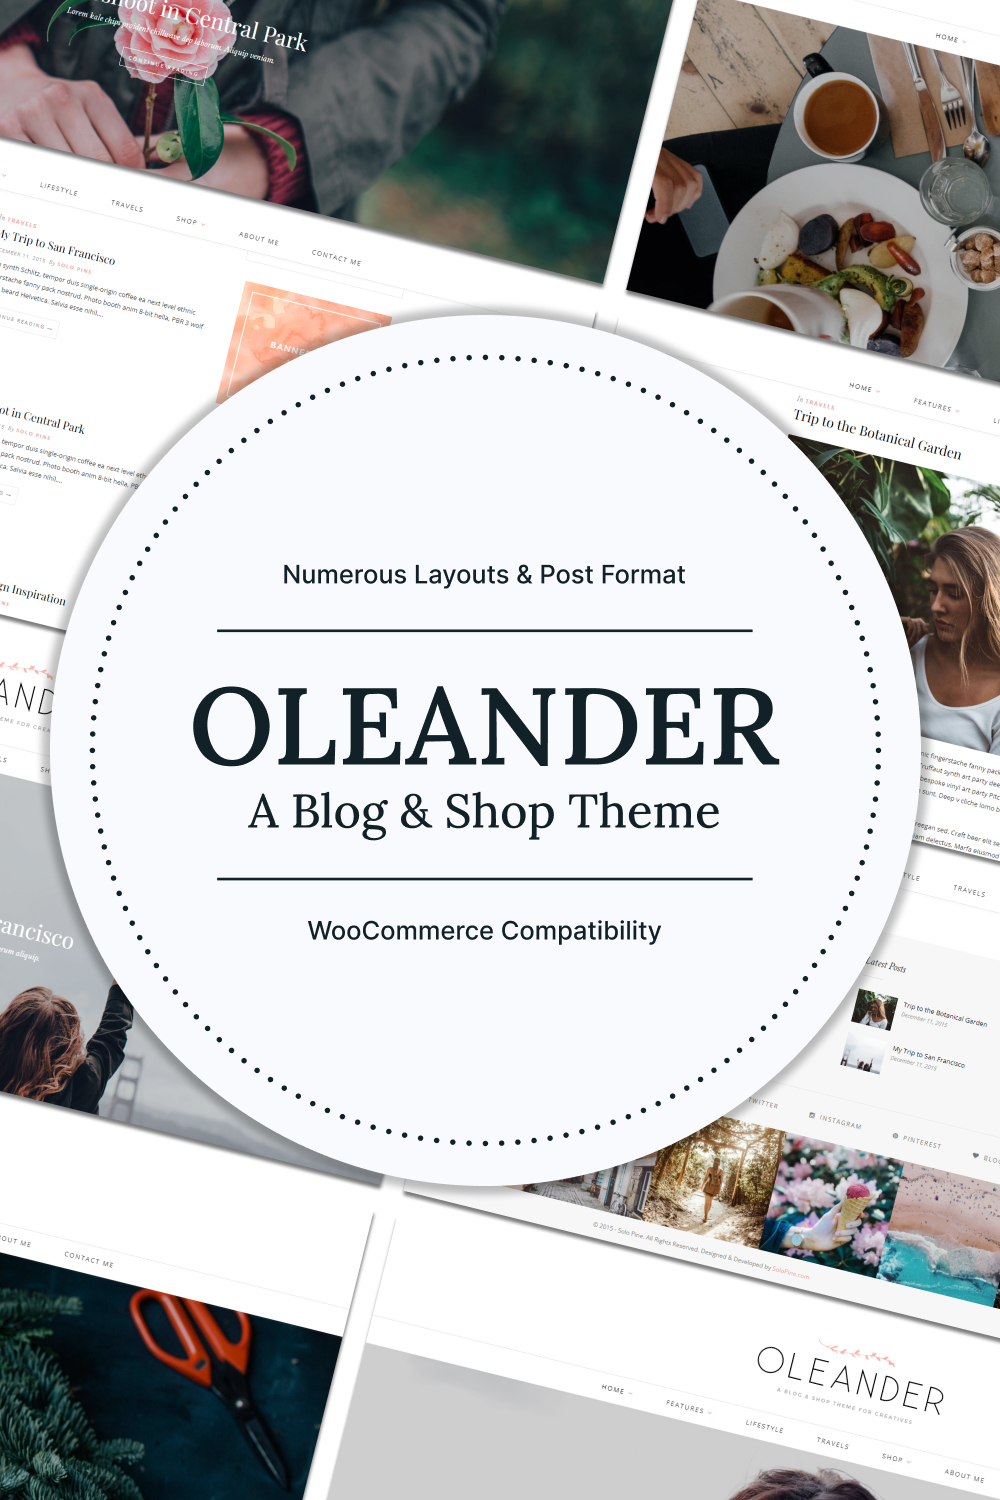 Pinterest images of oleander a blog shop theme.